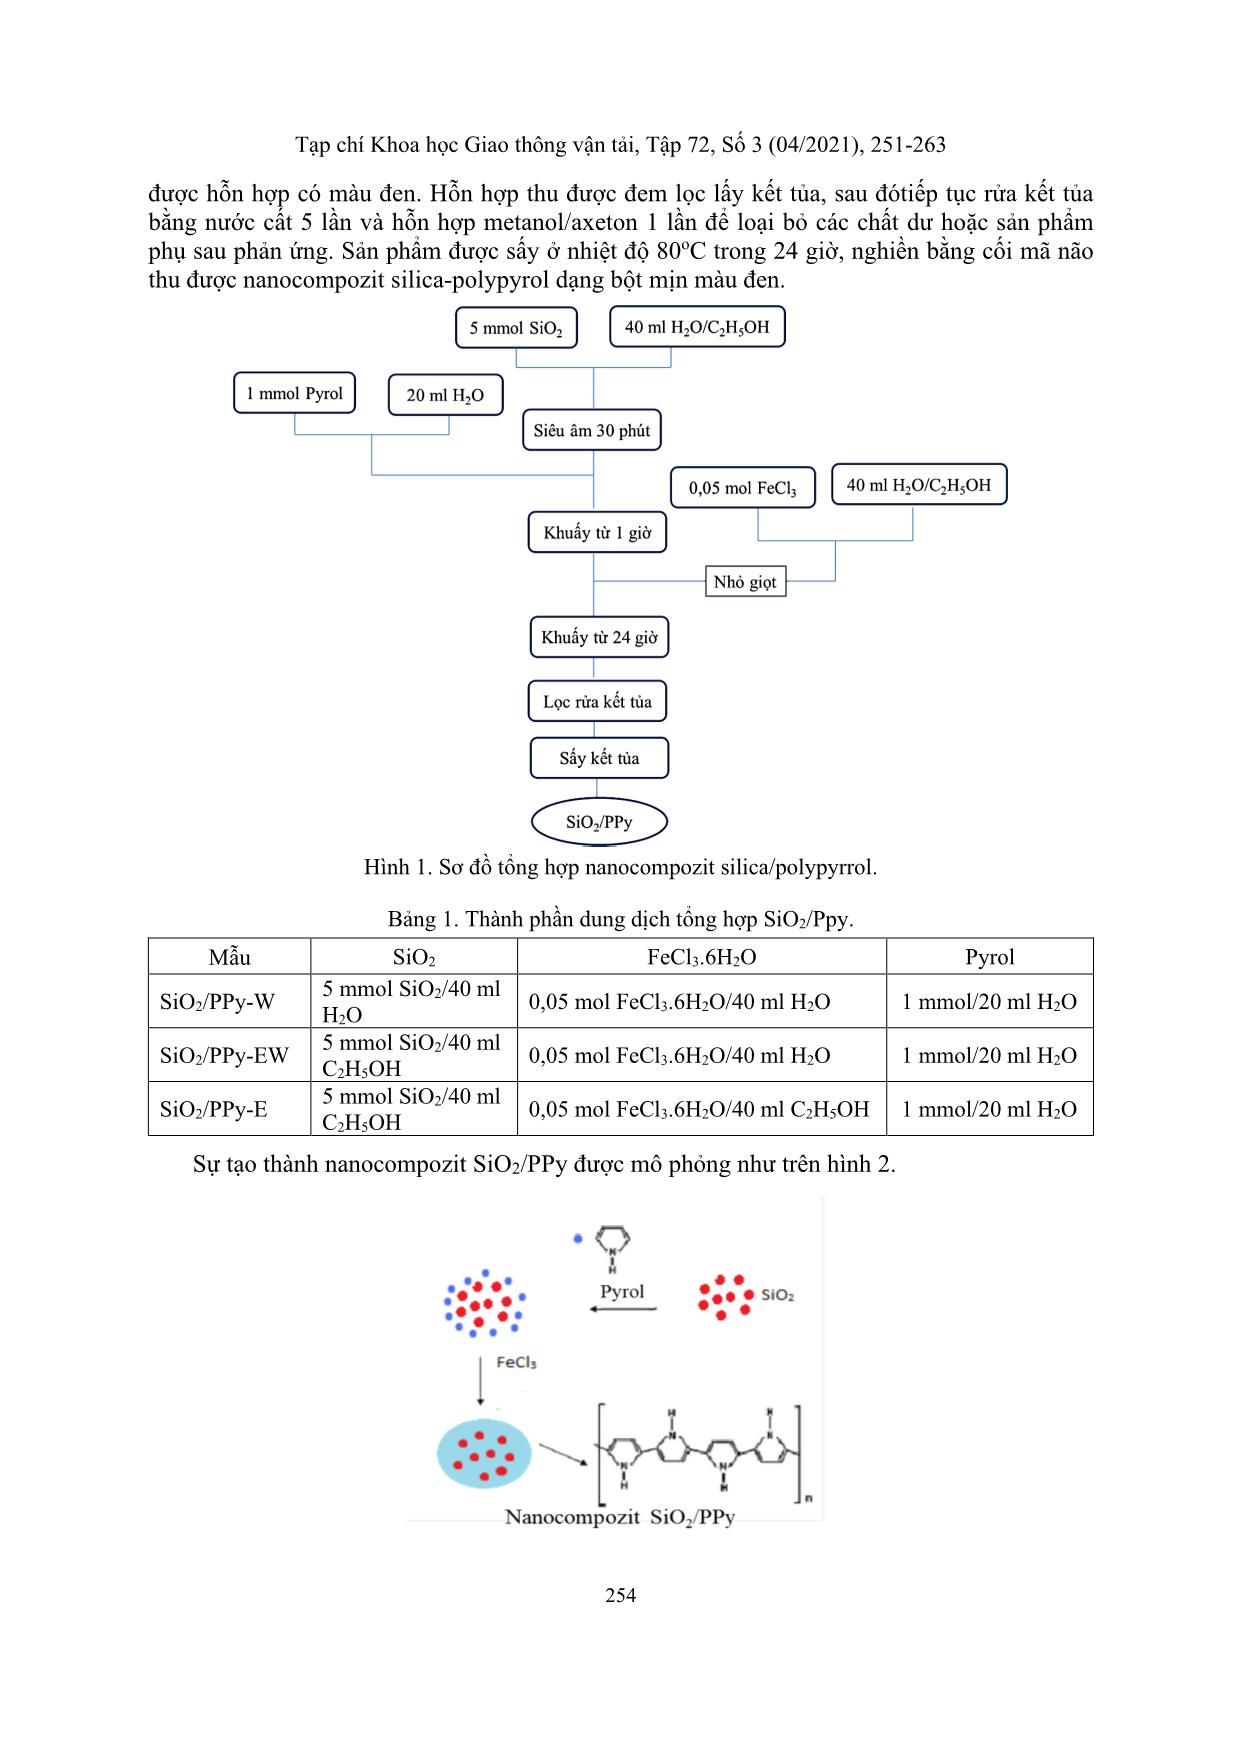 Nghiên cứu sự ảnh hưởng của dung môi đến quá trình tổng hợp nano composite SiO₂/PPY trang 4